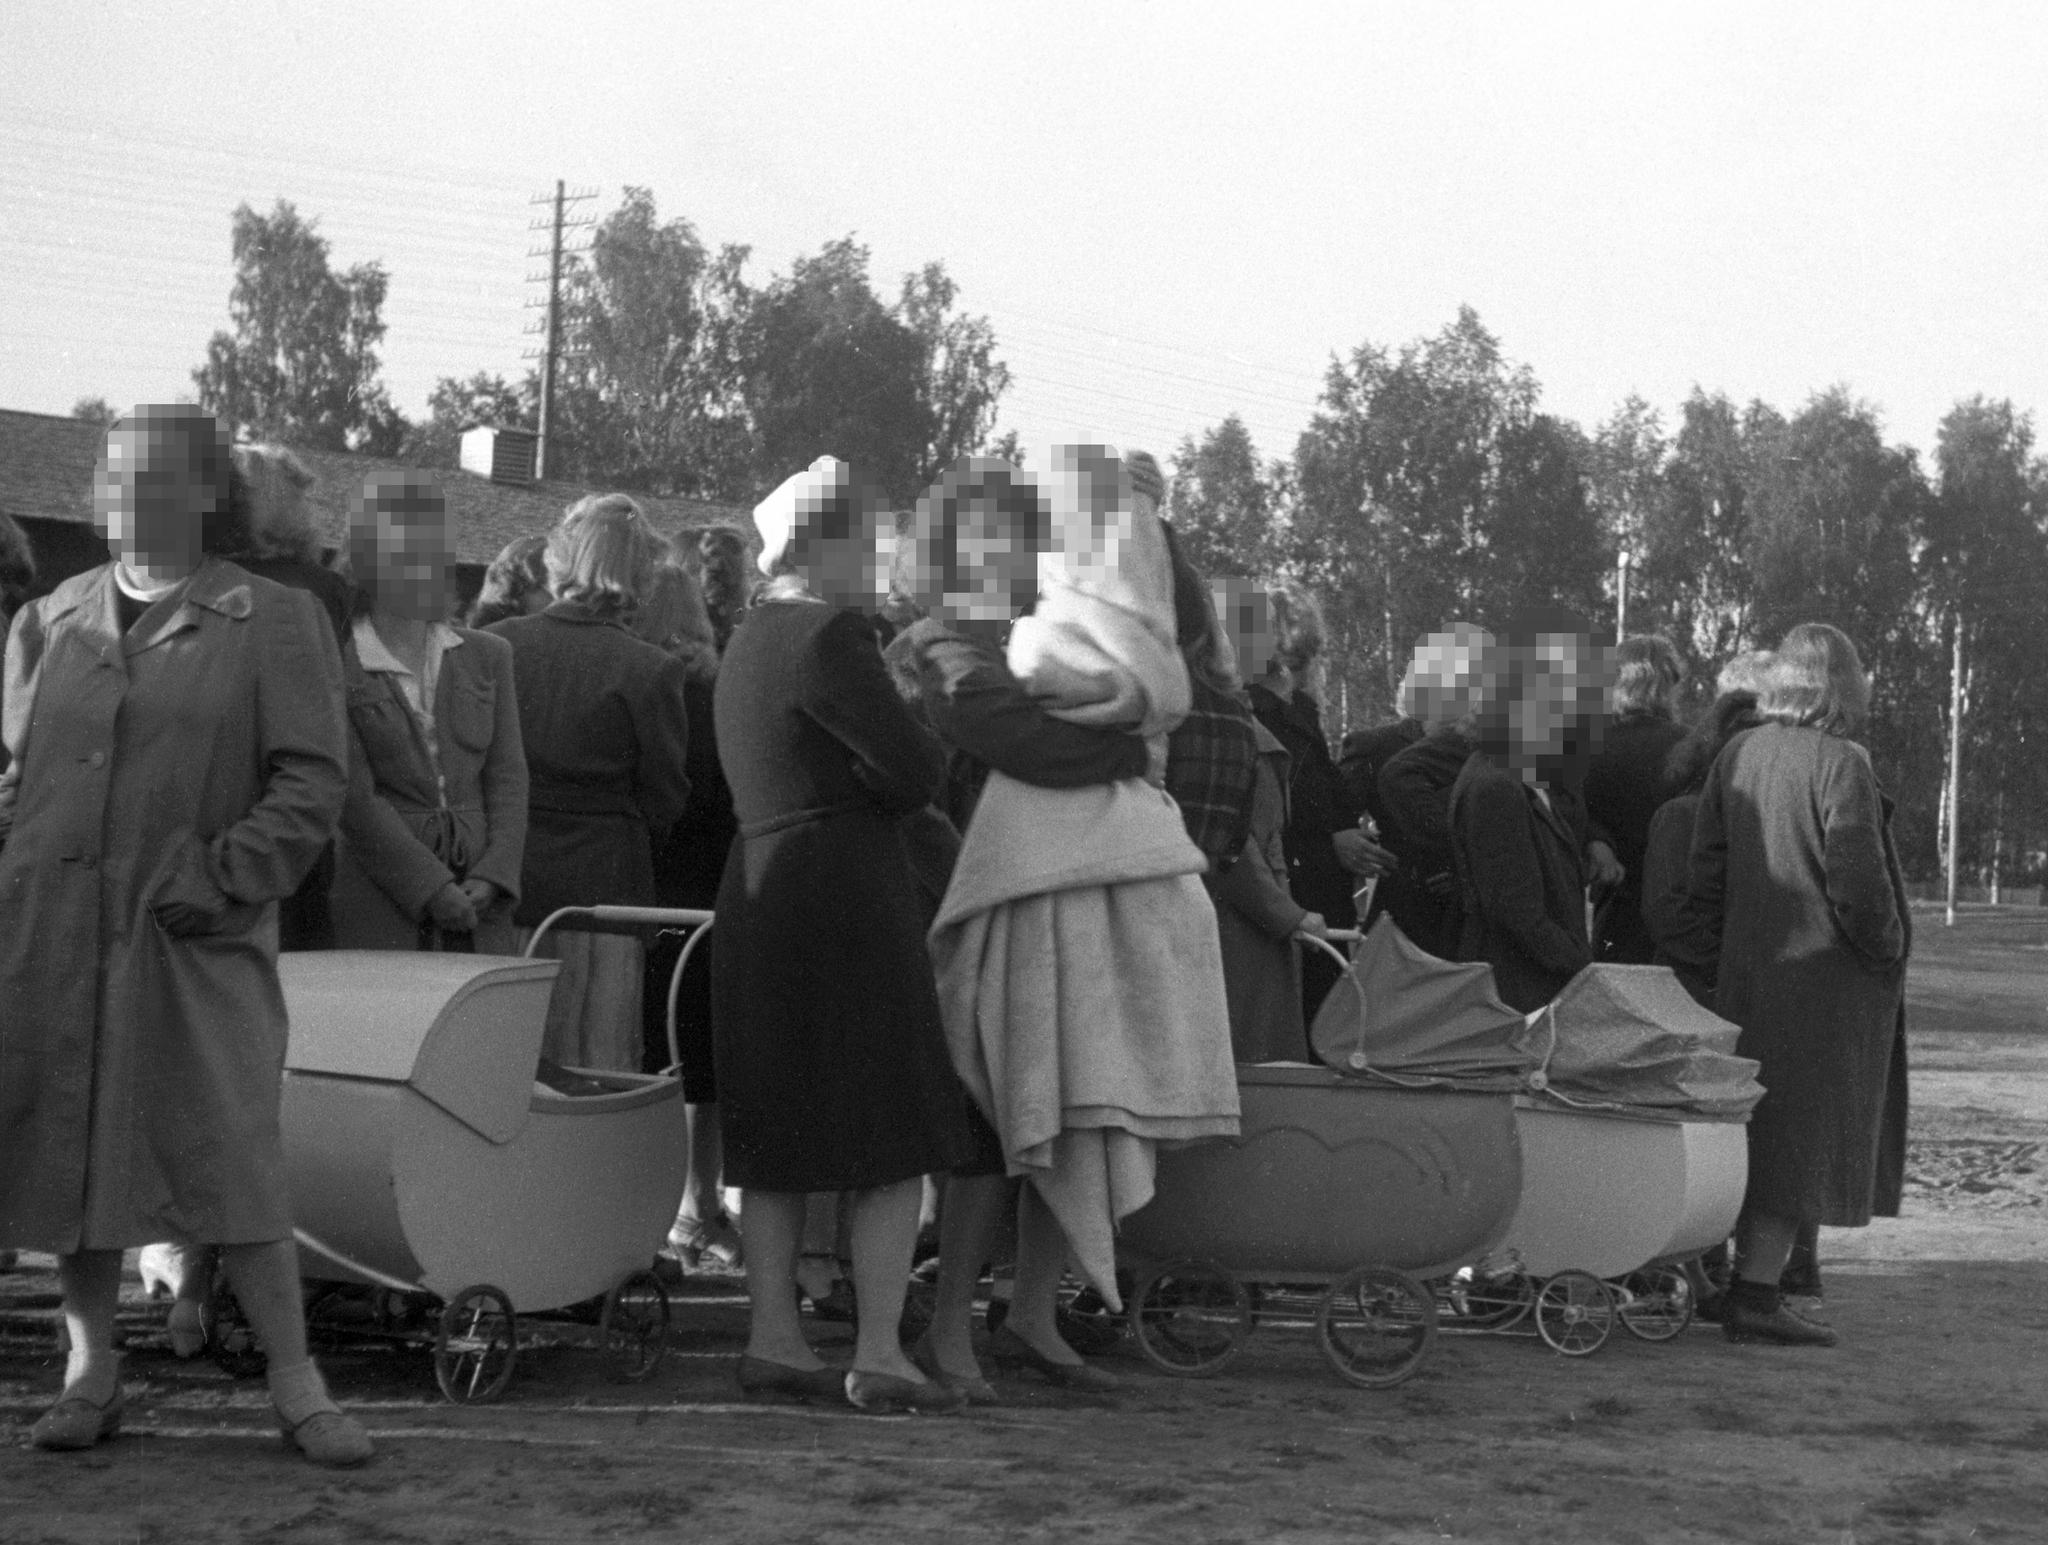 Elverum 1945: Tyskerjenter med barnevogner. Noen opplevde hevnaksjoner, ble tatt av gatens justis og fikk tvangsklippet håret. Nå kommer Norges offisielle unnskyldning. 